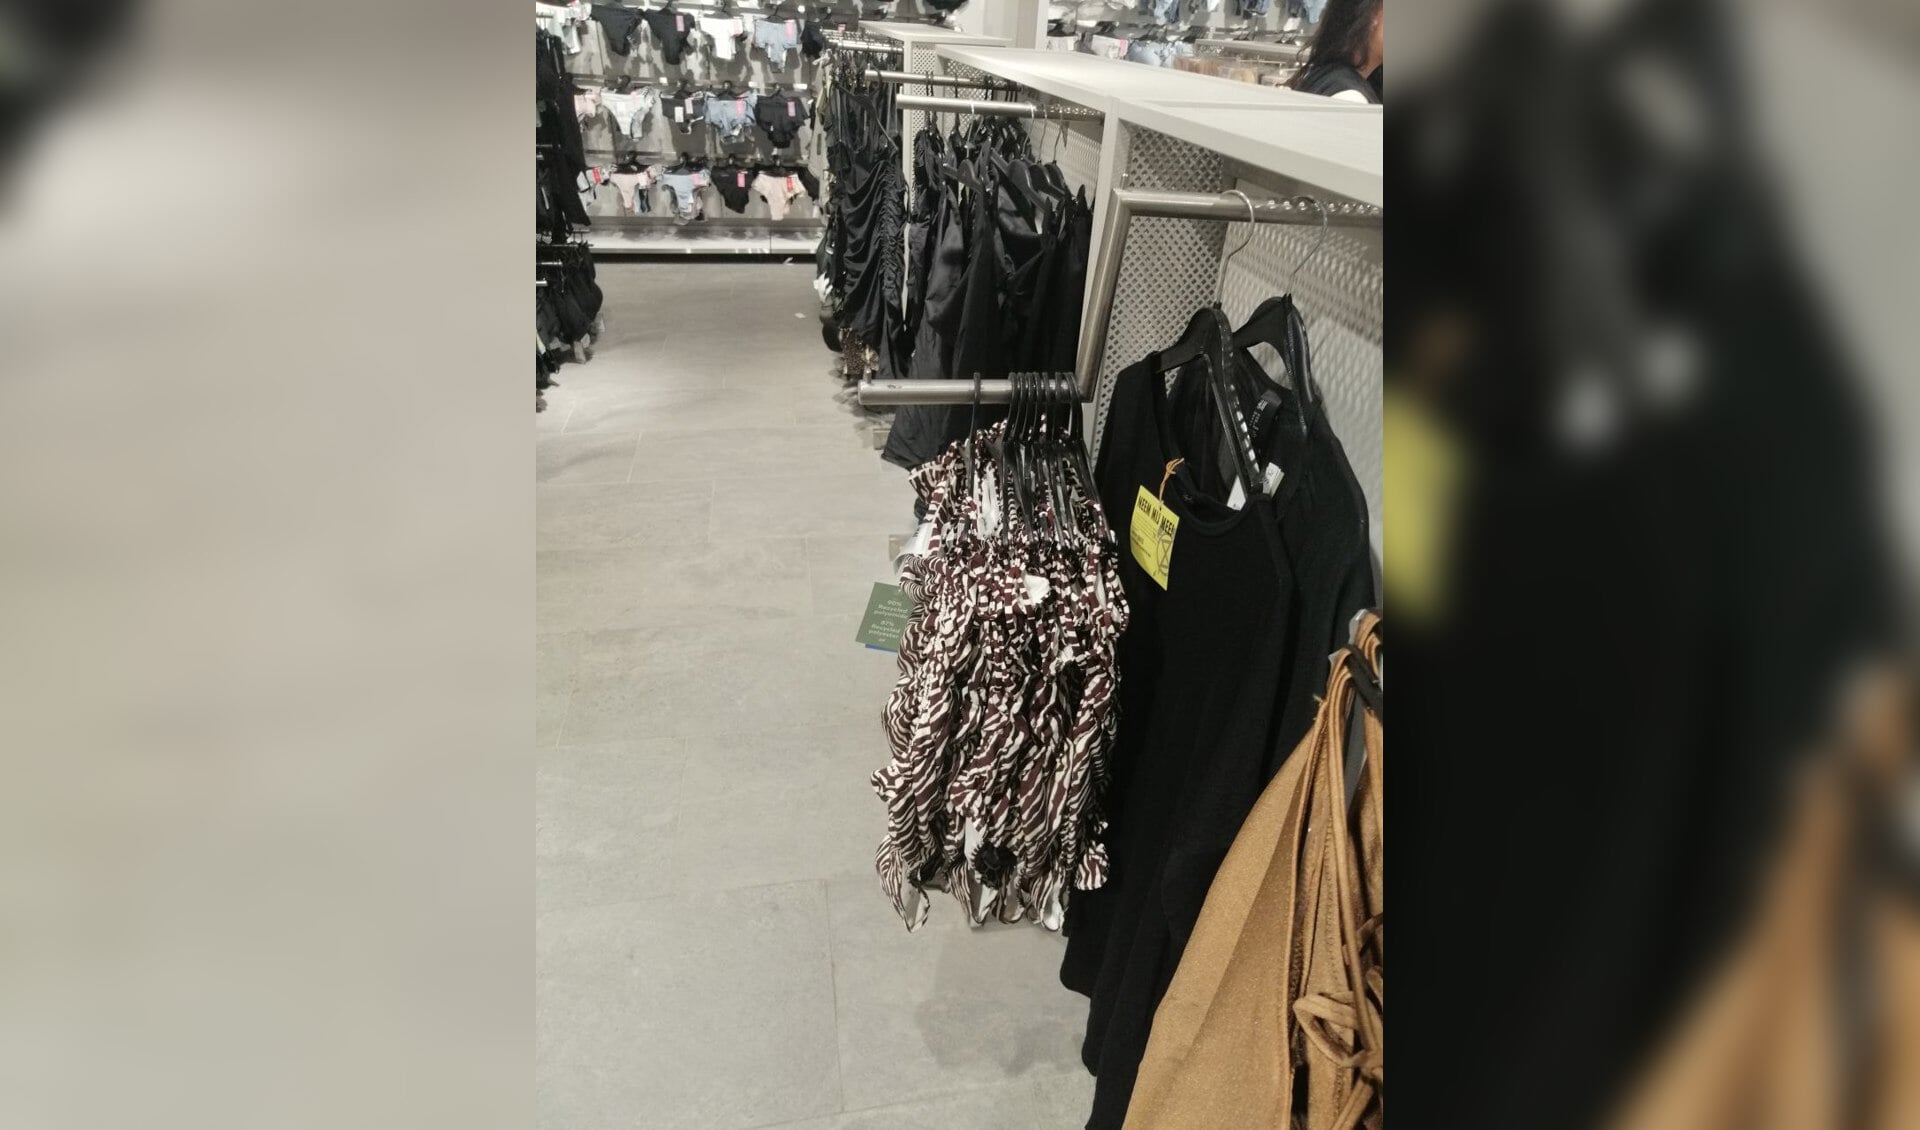 De tweedehands kleding werd tussen de kleding van de winkel gehangen.